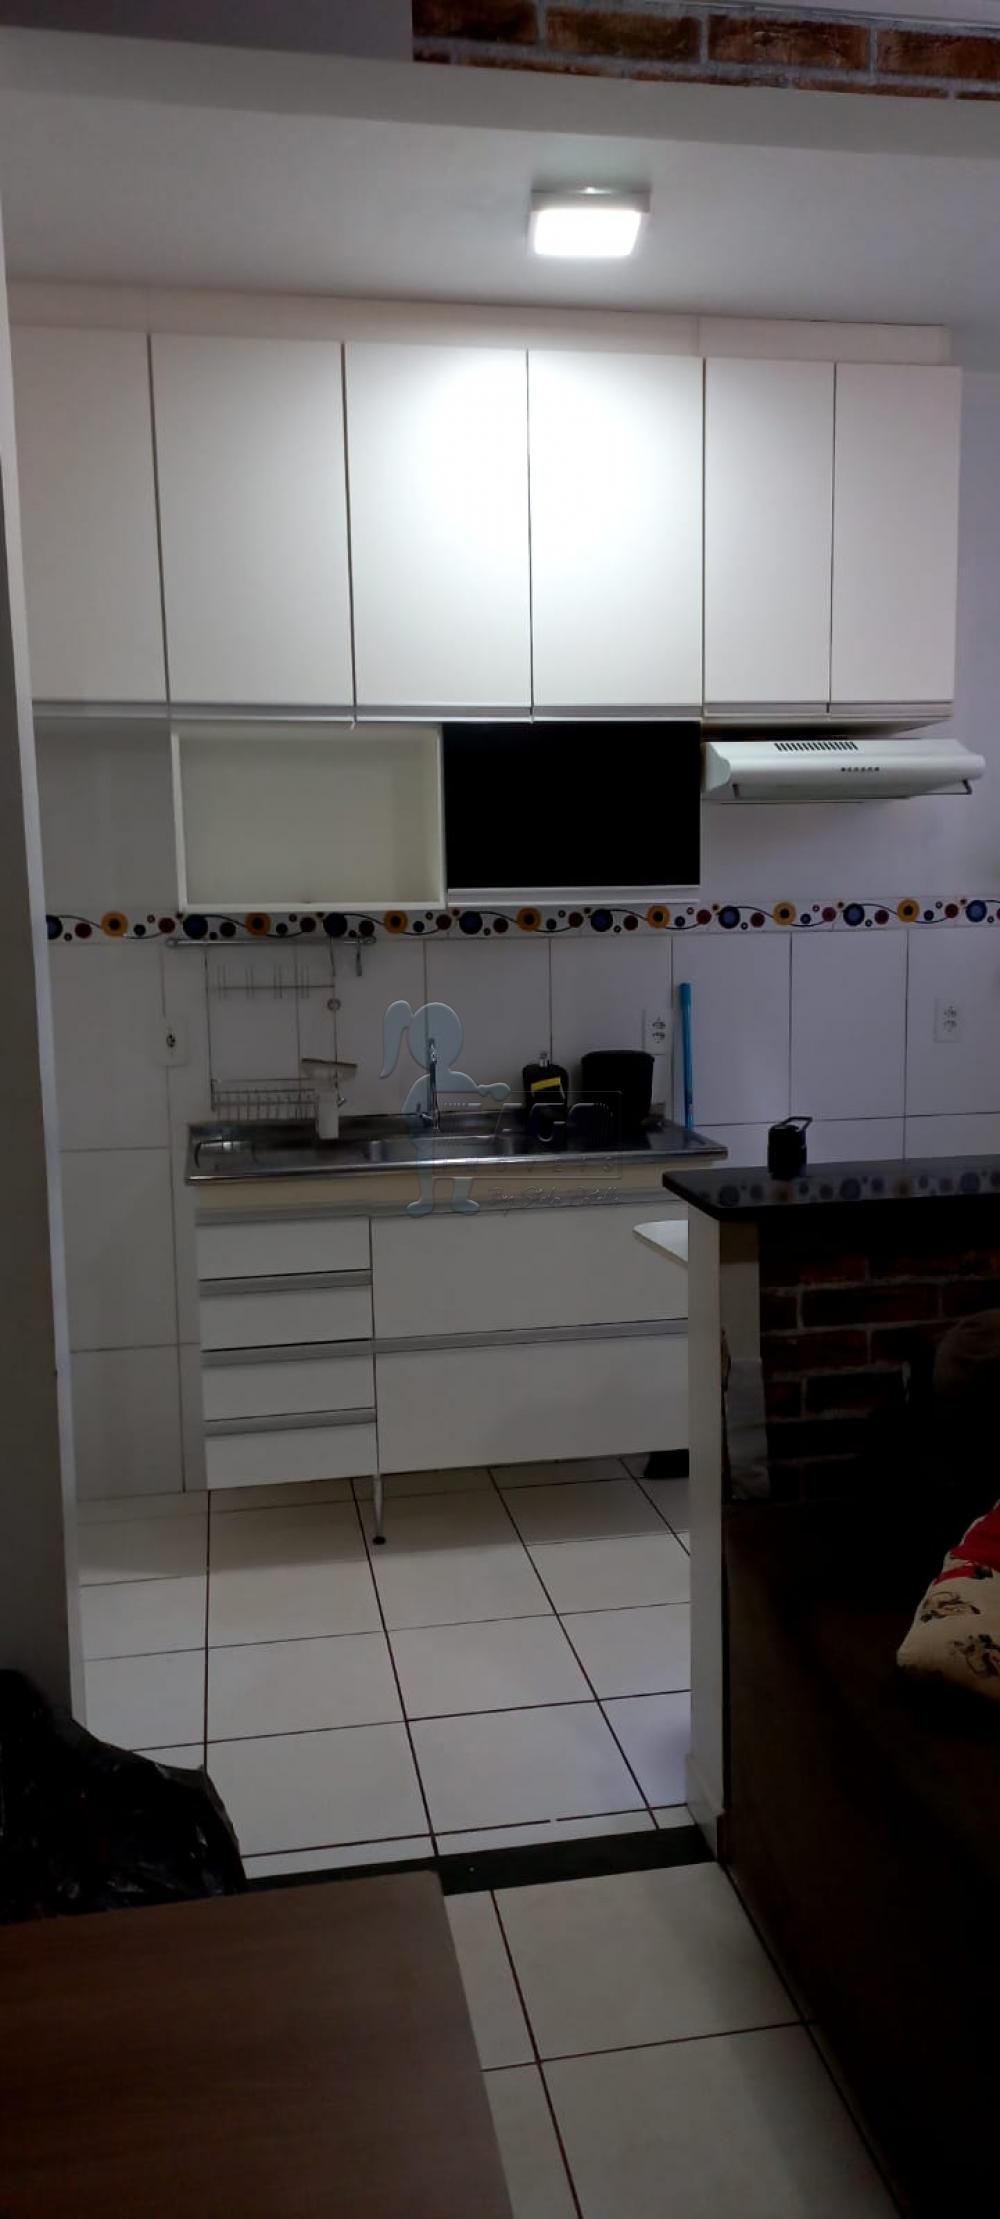 Comprar Apartamentos / Padrão em Ribeirão Preto R$ 180.000,00 - Foto 15